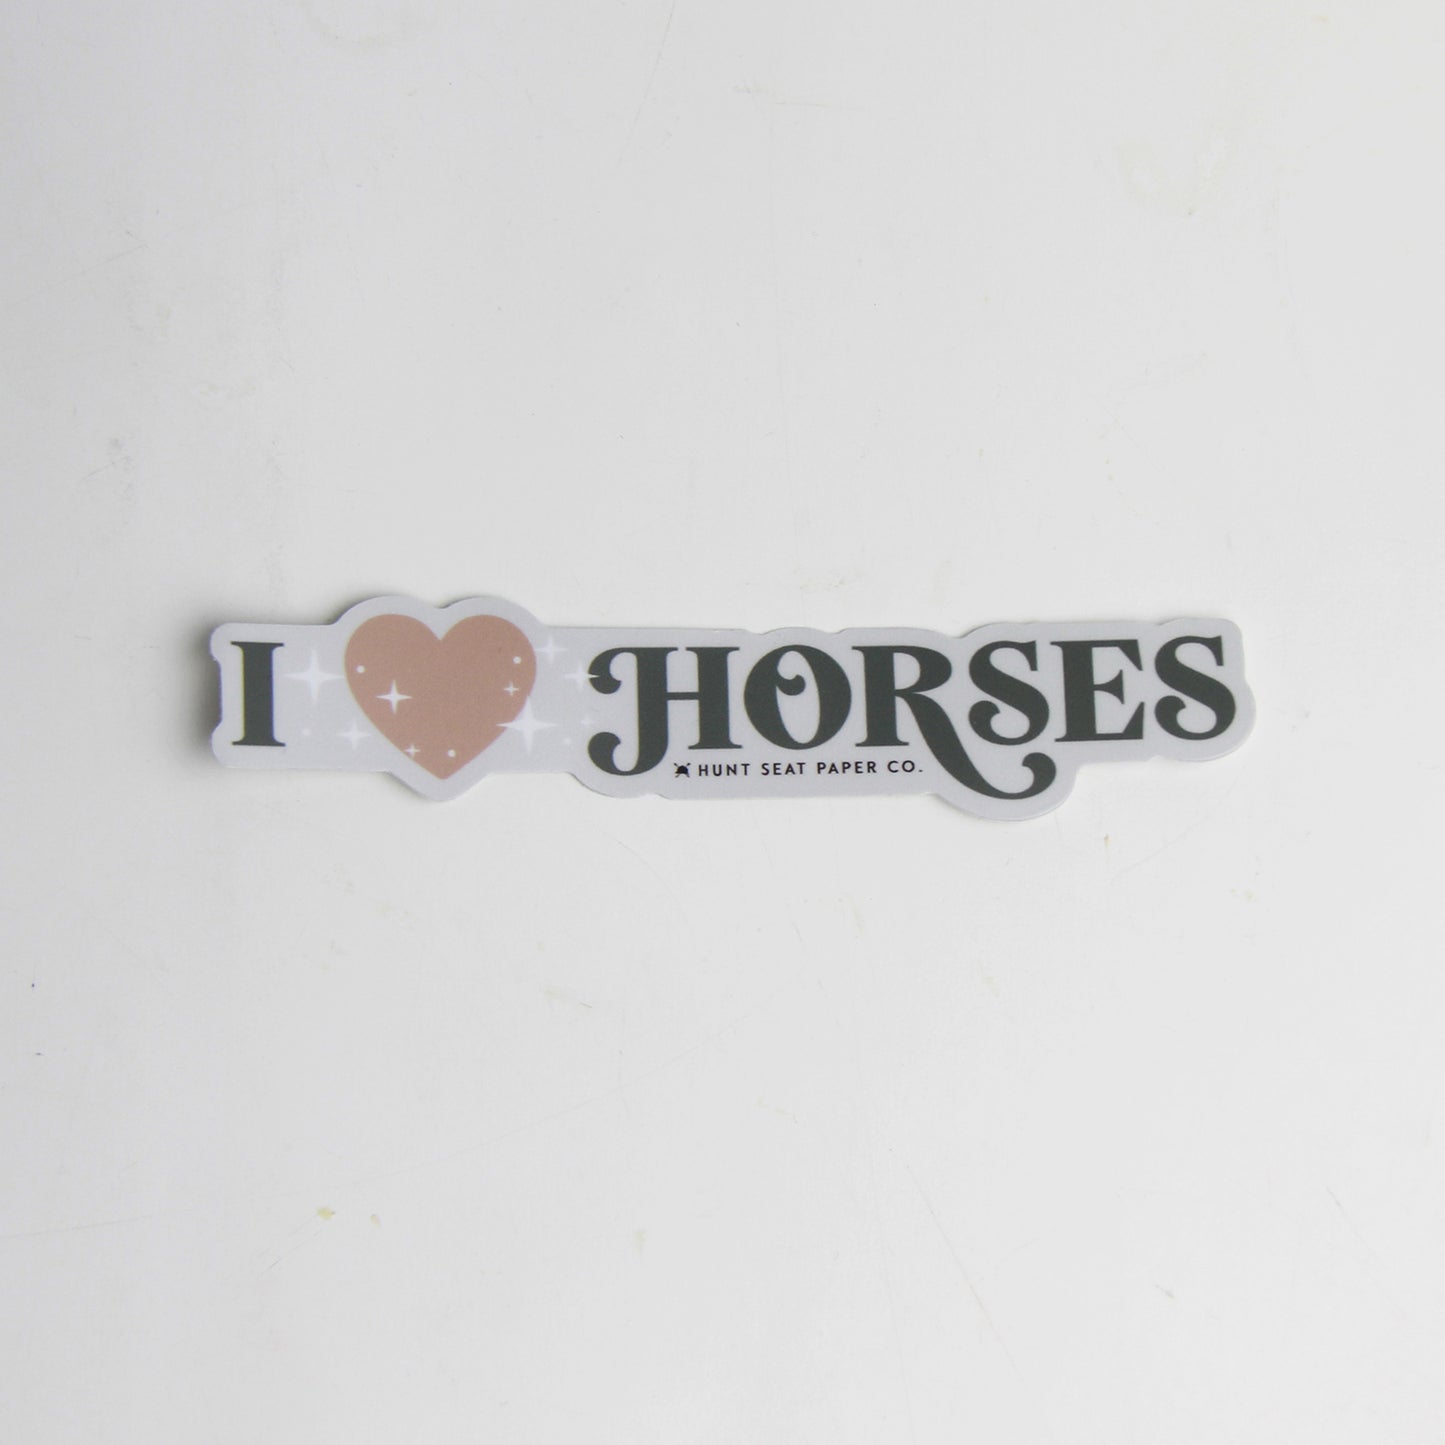 I Love Horses Sticker